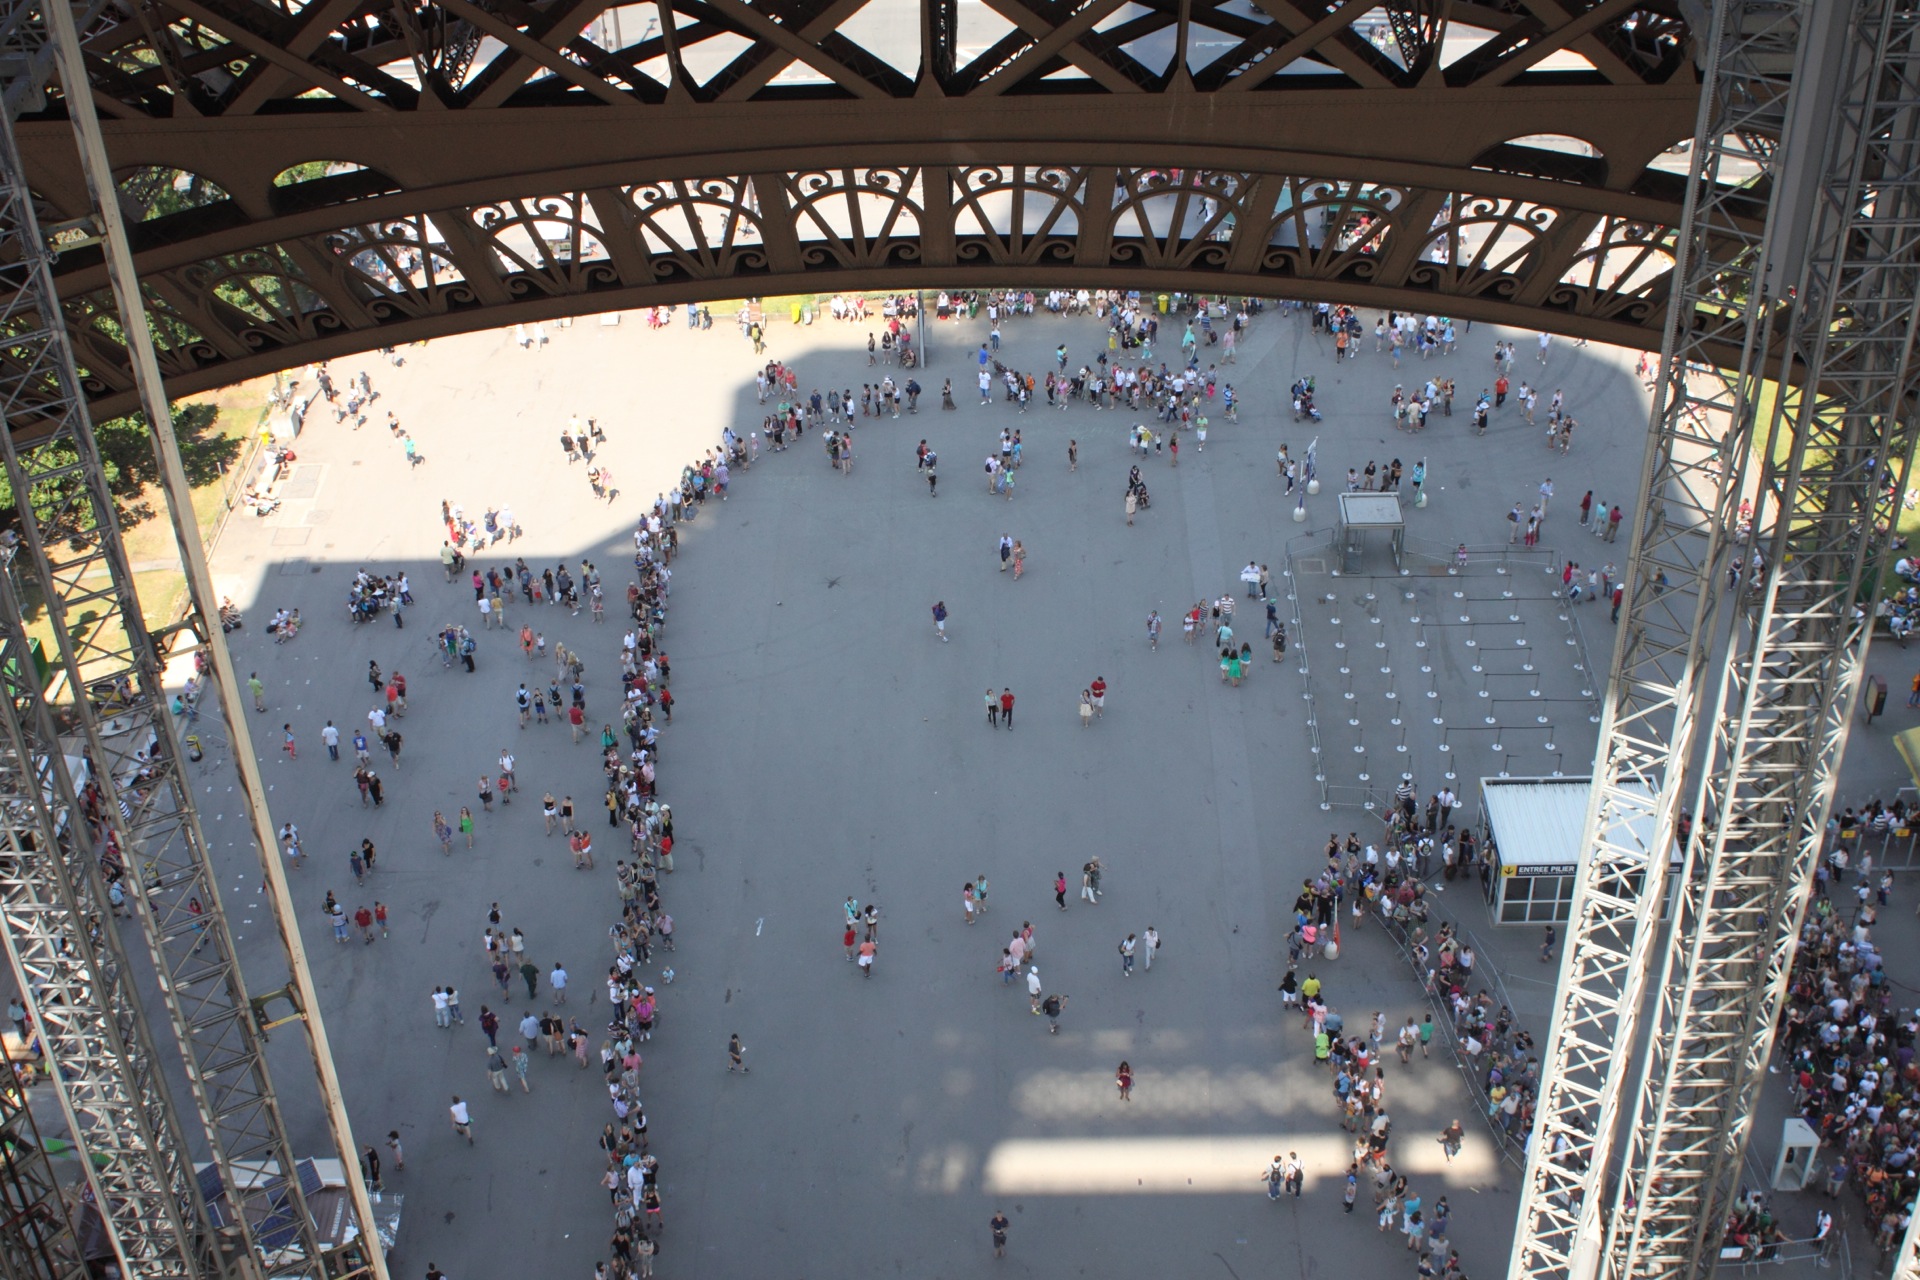 Eiffel tower queues